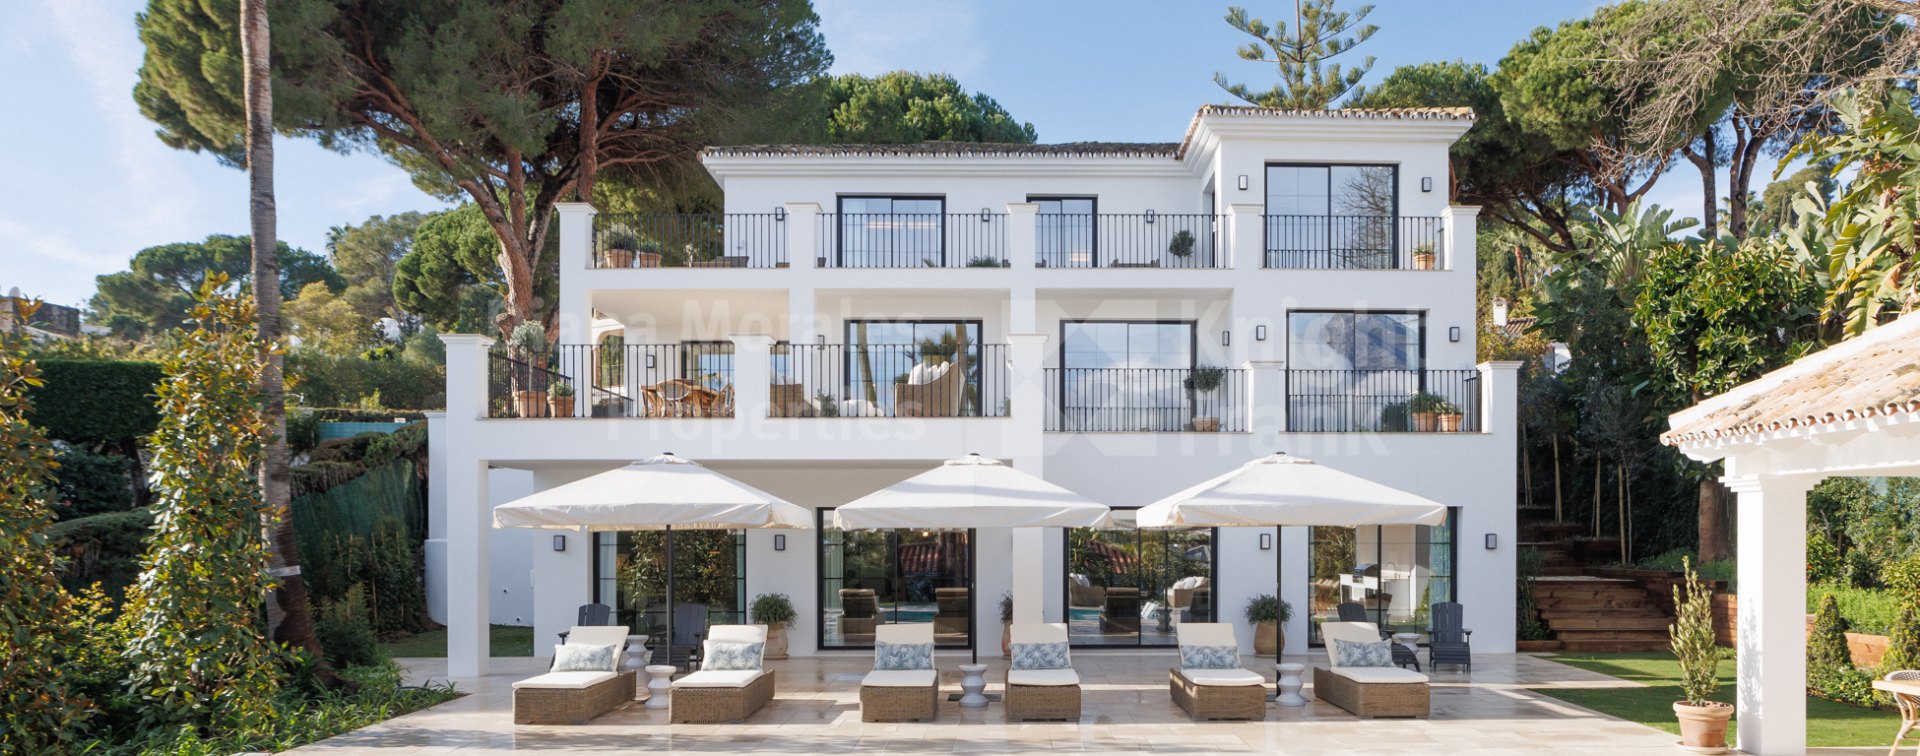 Las Brisas, Lujosa villa de estilo Andaluz con impresionantes vistas